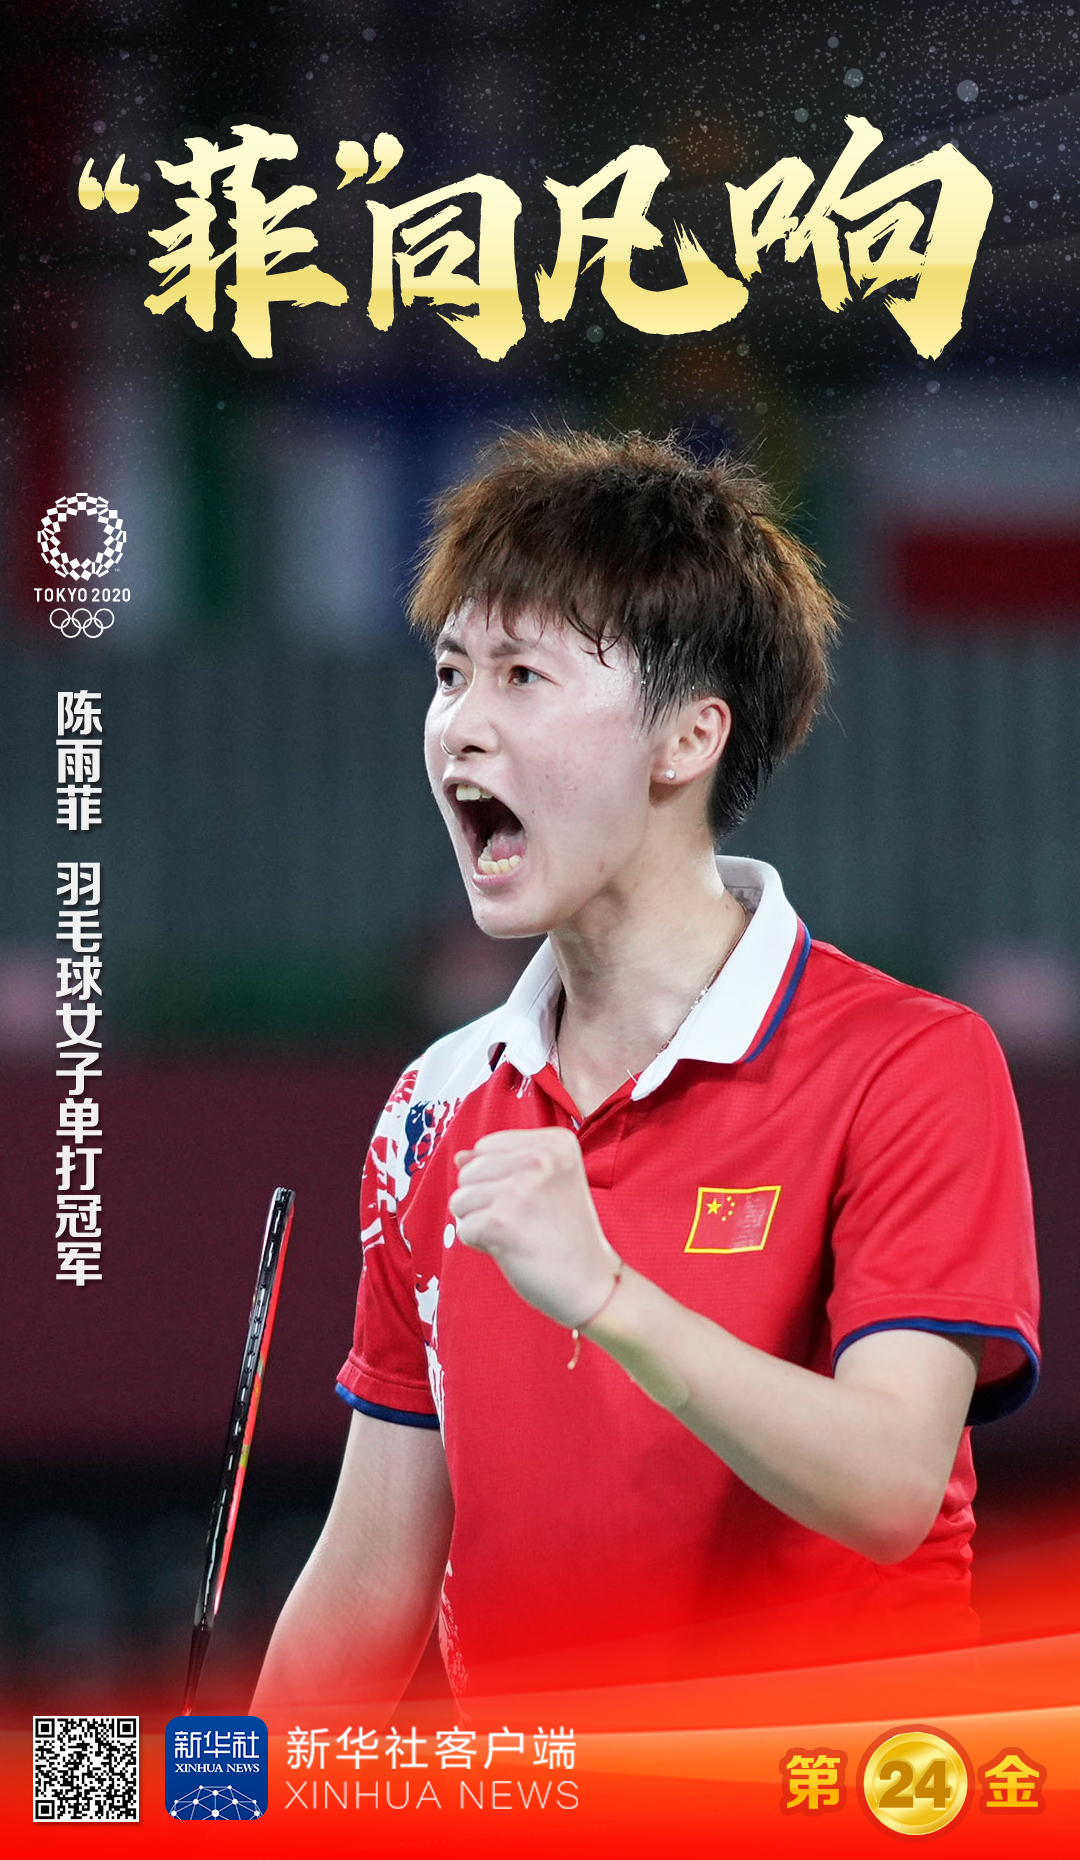 8月1日,在东京奥运会羽毛球女子单打决赛中,中国选手陈雨菲夺得冠 